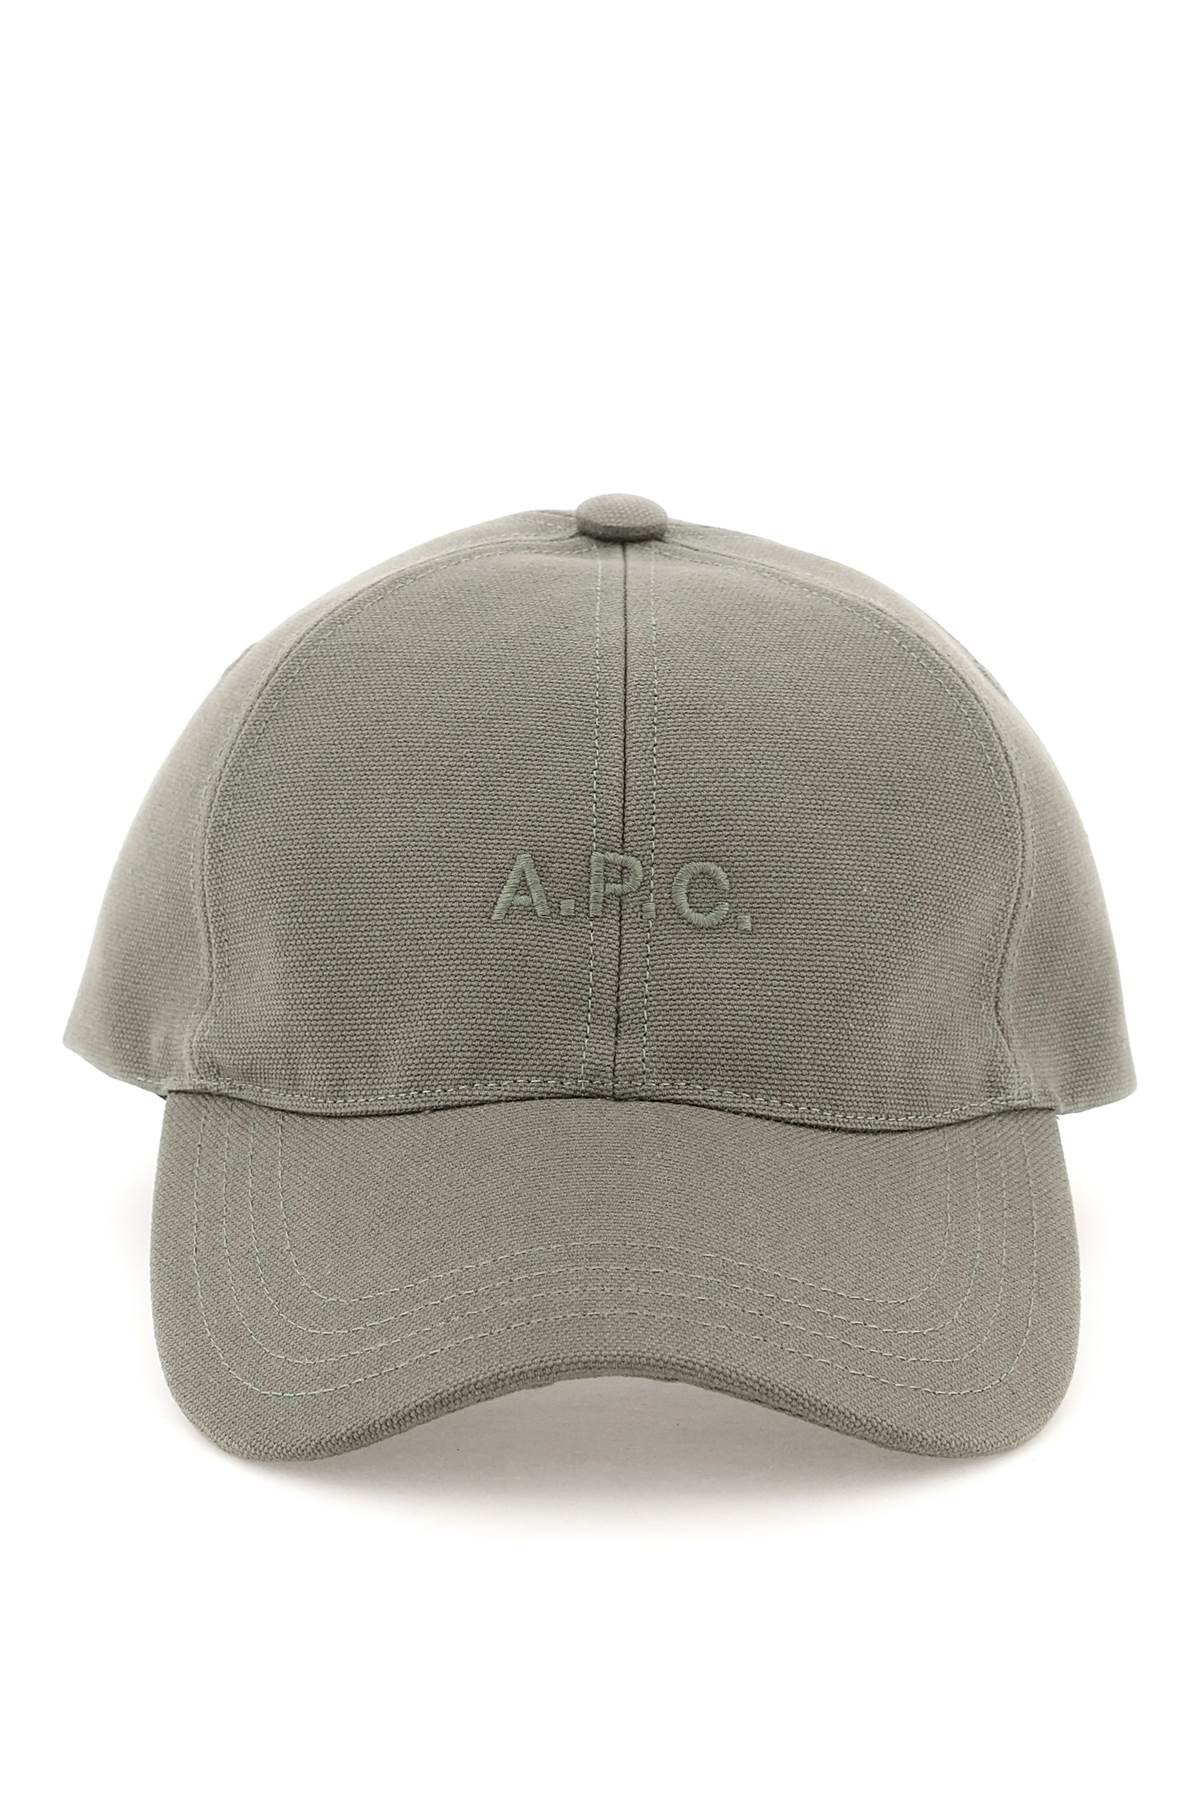 APC CHARLES CAP